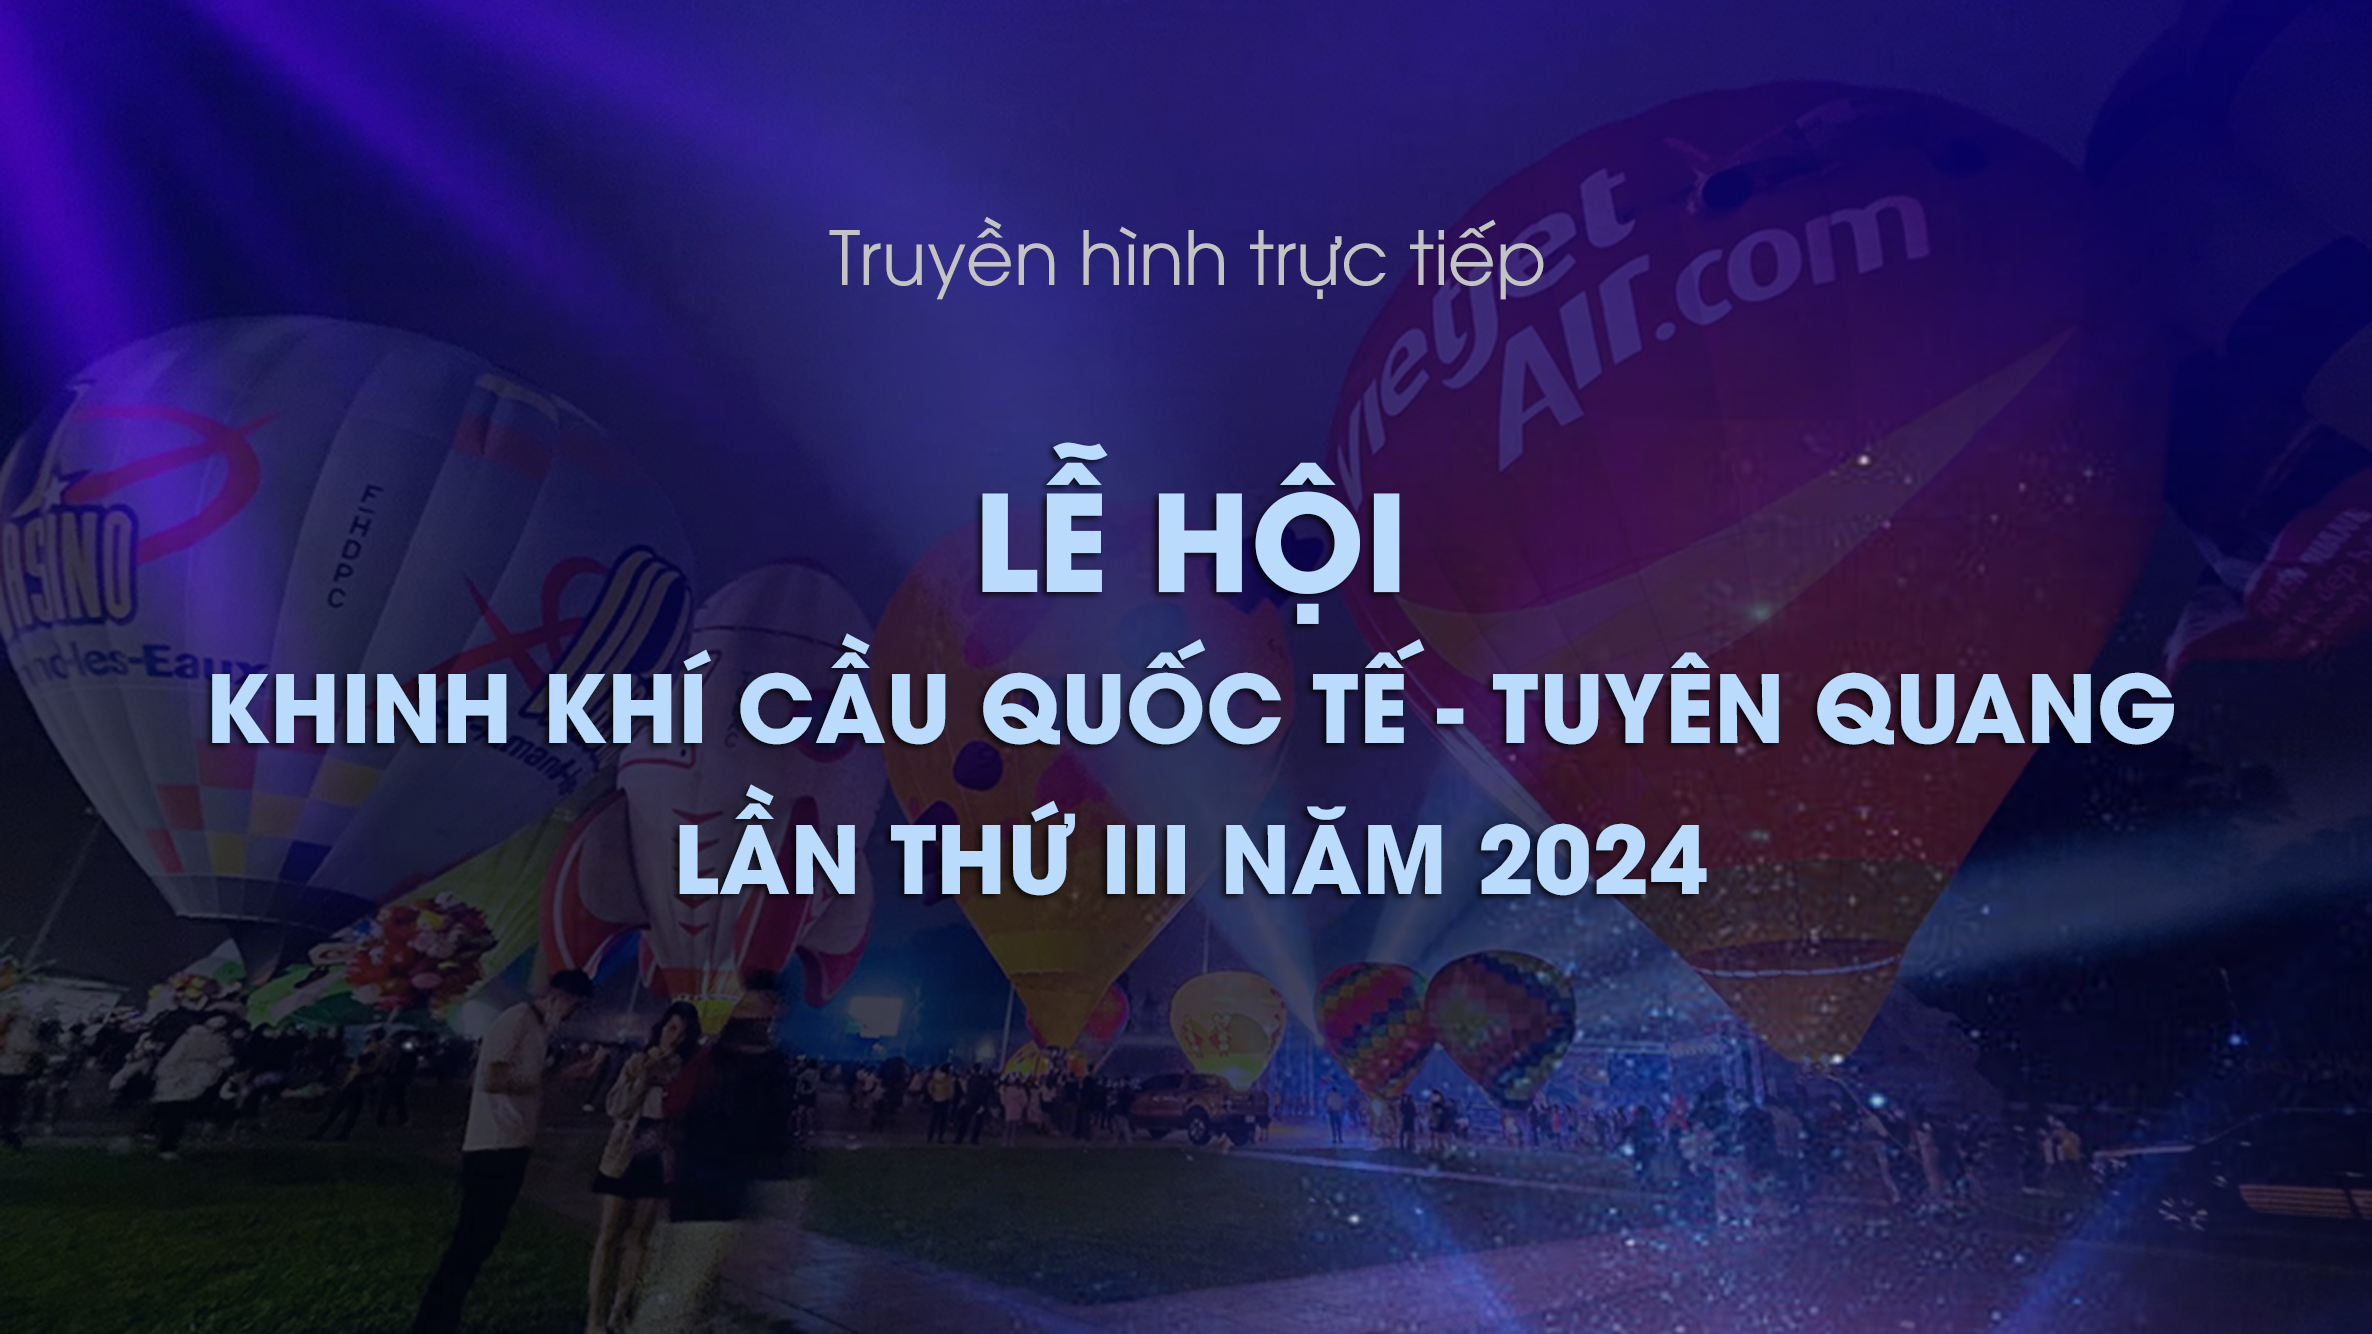 Trực tiếp: Khai mạc Lễ hội Khinh khí cầu quốc tế - Tuyên Quang lần thứ 3 năm 2024